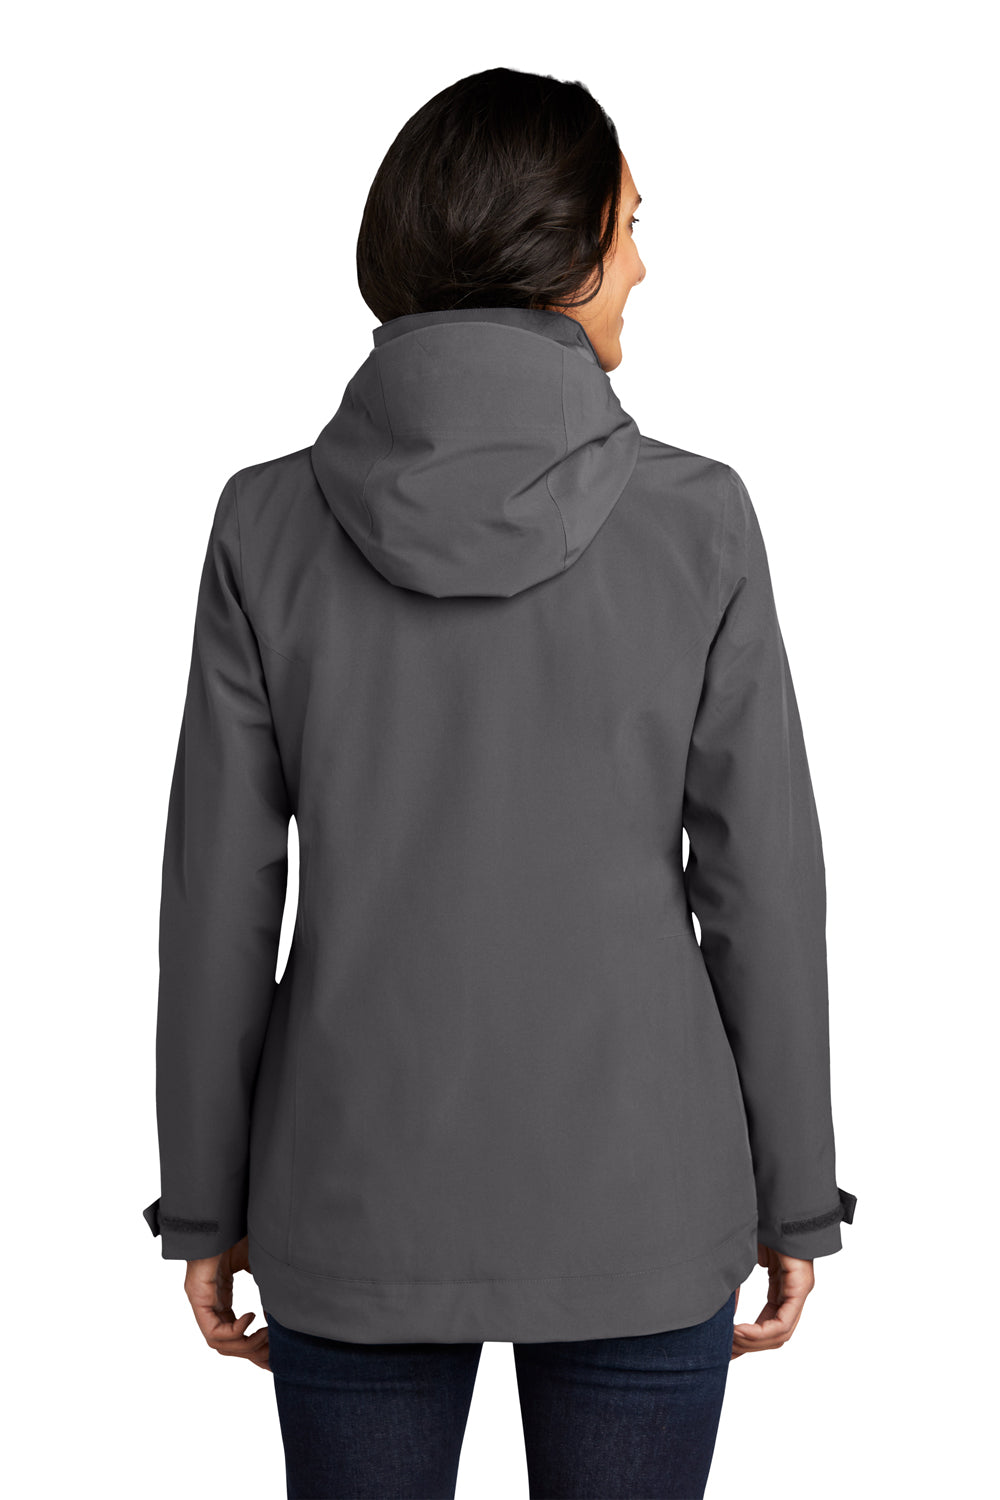 Eddie Bauer EB657 Womens WeatherEdge 3-in-1 Water Resistant Full Zip Hooded Jacket Steel Grey/Metal Grey Model Back